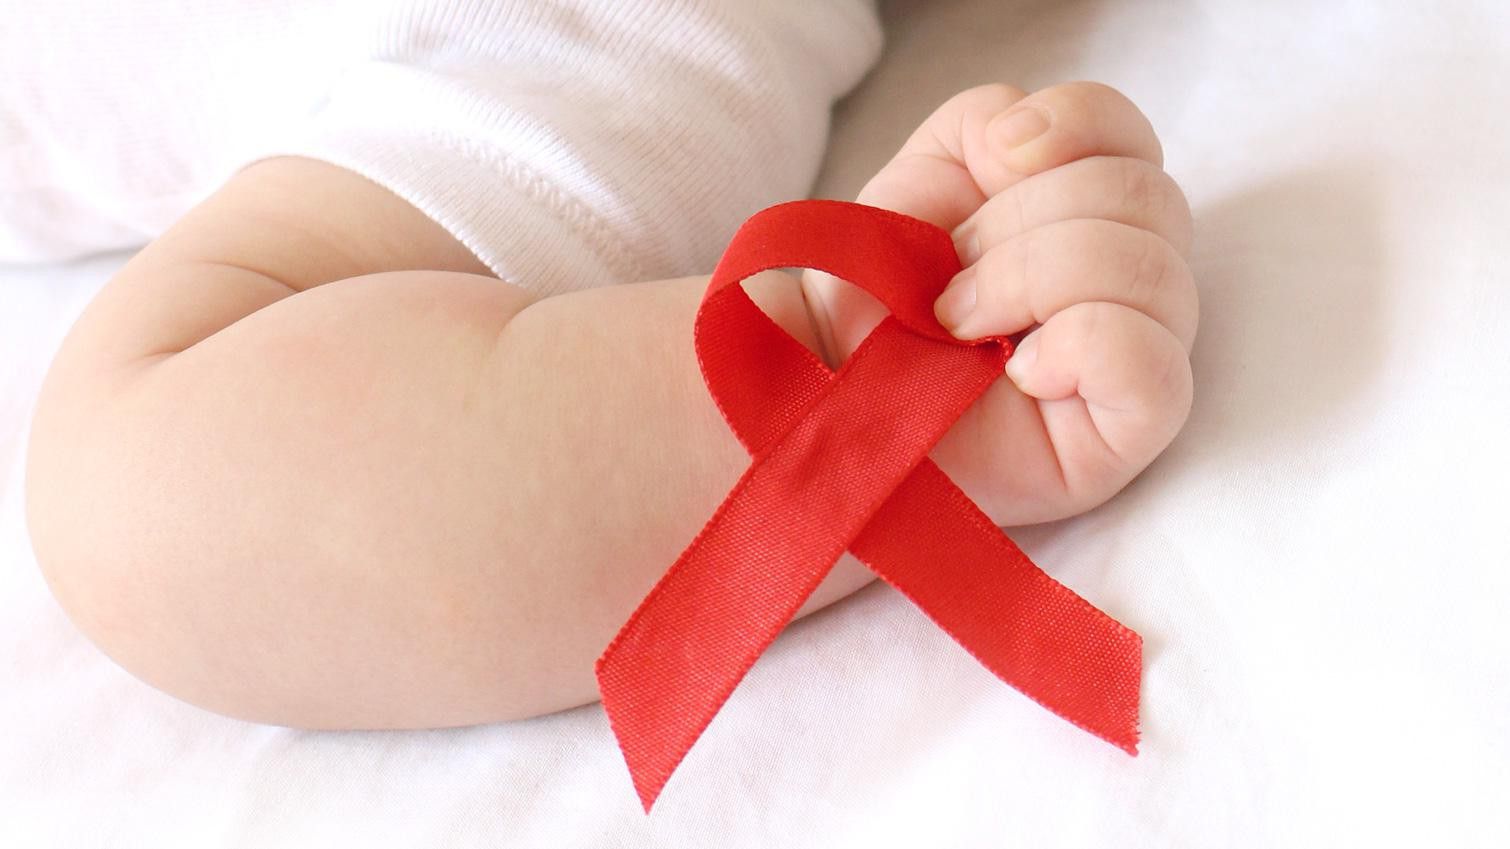 Waspada HIV/AIDS Bisa Menyerang Anak, Kenali Gejalanya